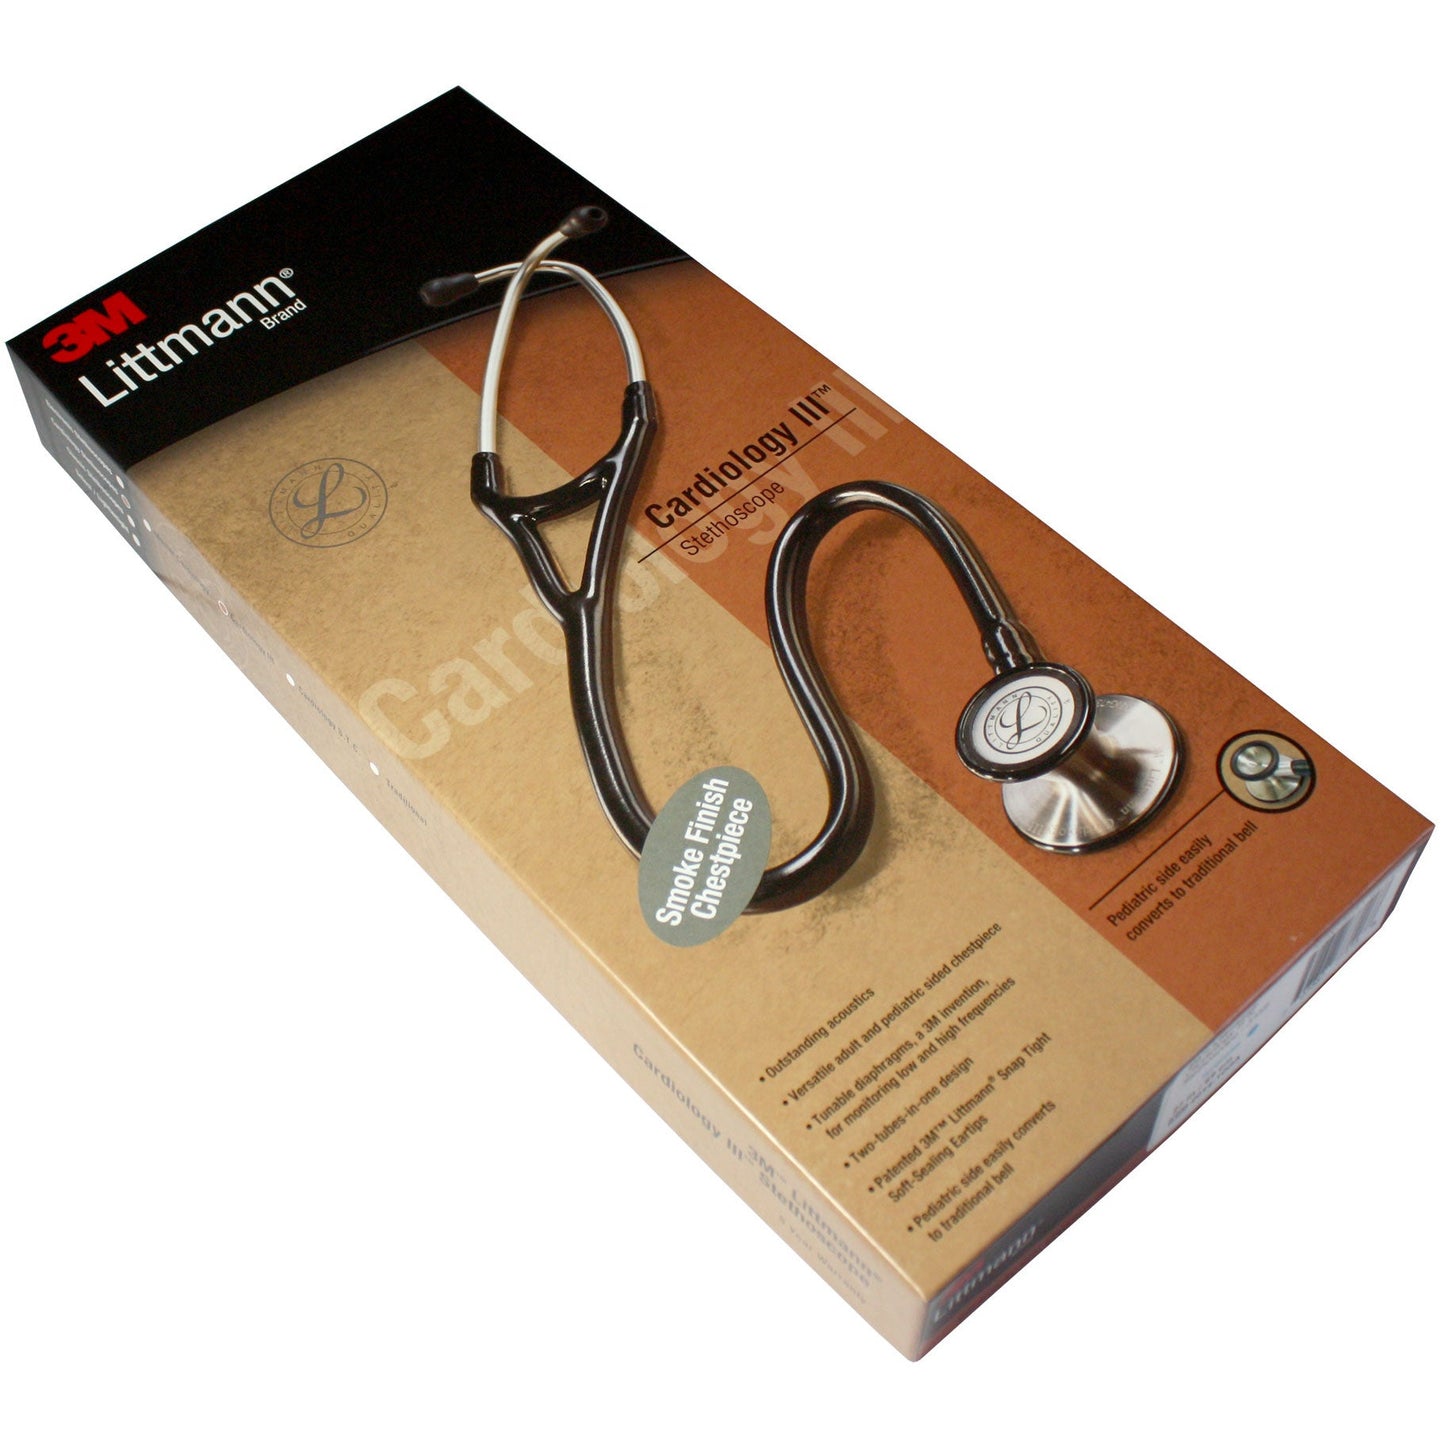 Littmann Cardiology III Stethoscope: Turquoise & Smoke 3159